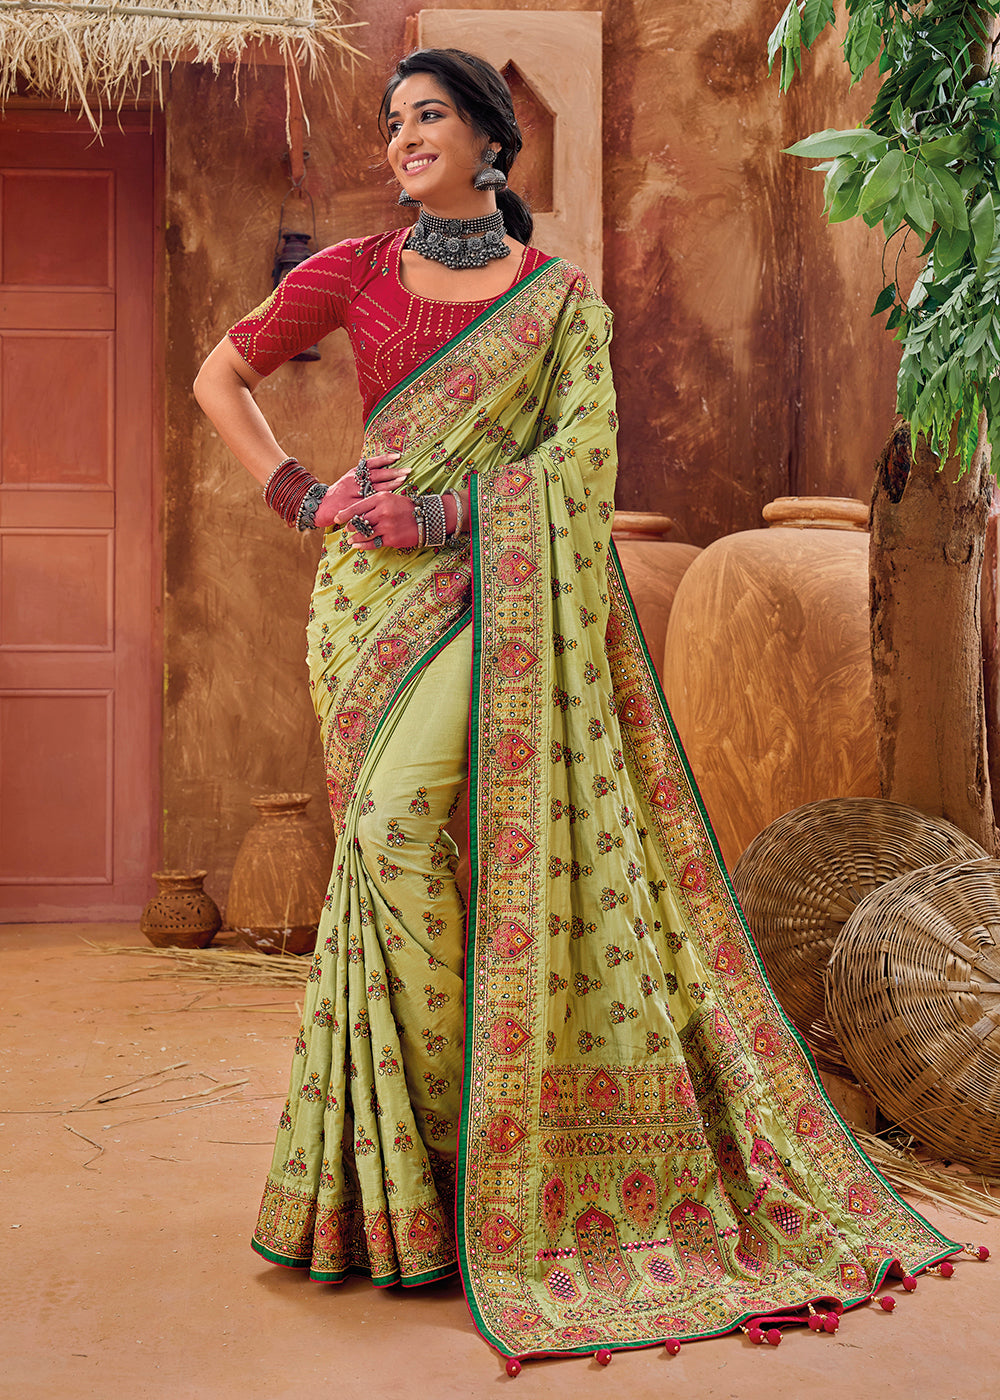 Buy Now Green Kachhi & Mirror Work Traditional Banarasi Saree Online in USA, UK, Canada & Worldwide at Empress Clothing. 